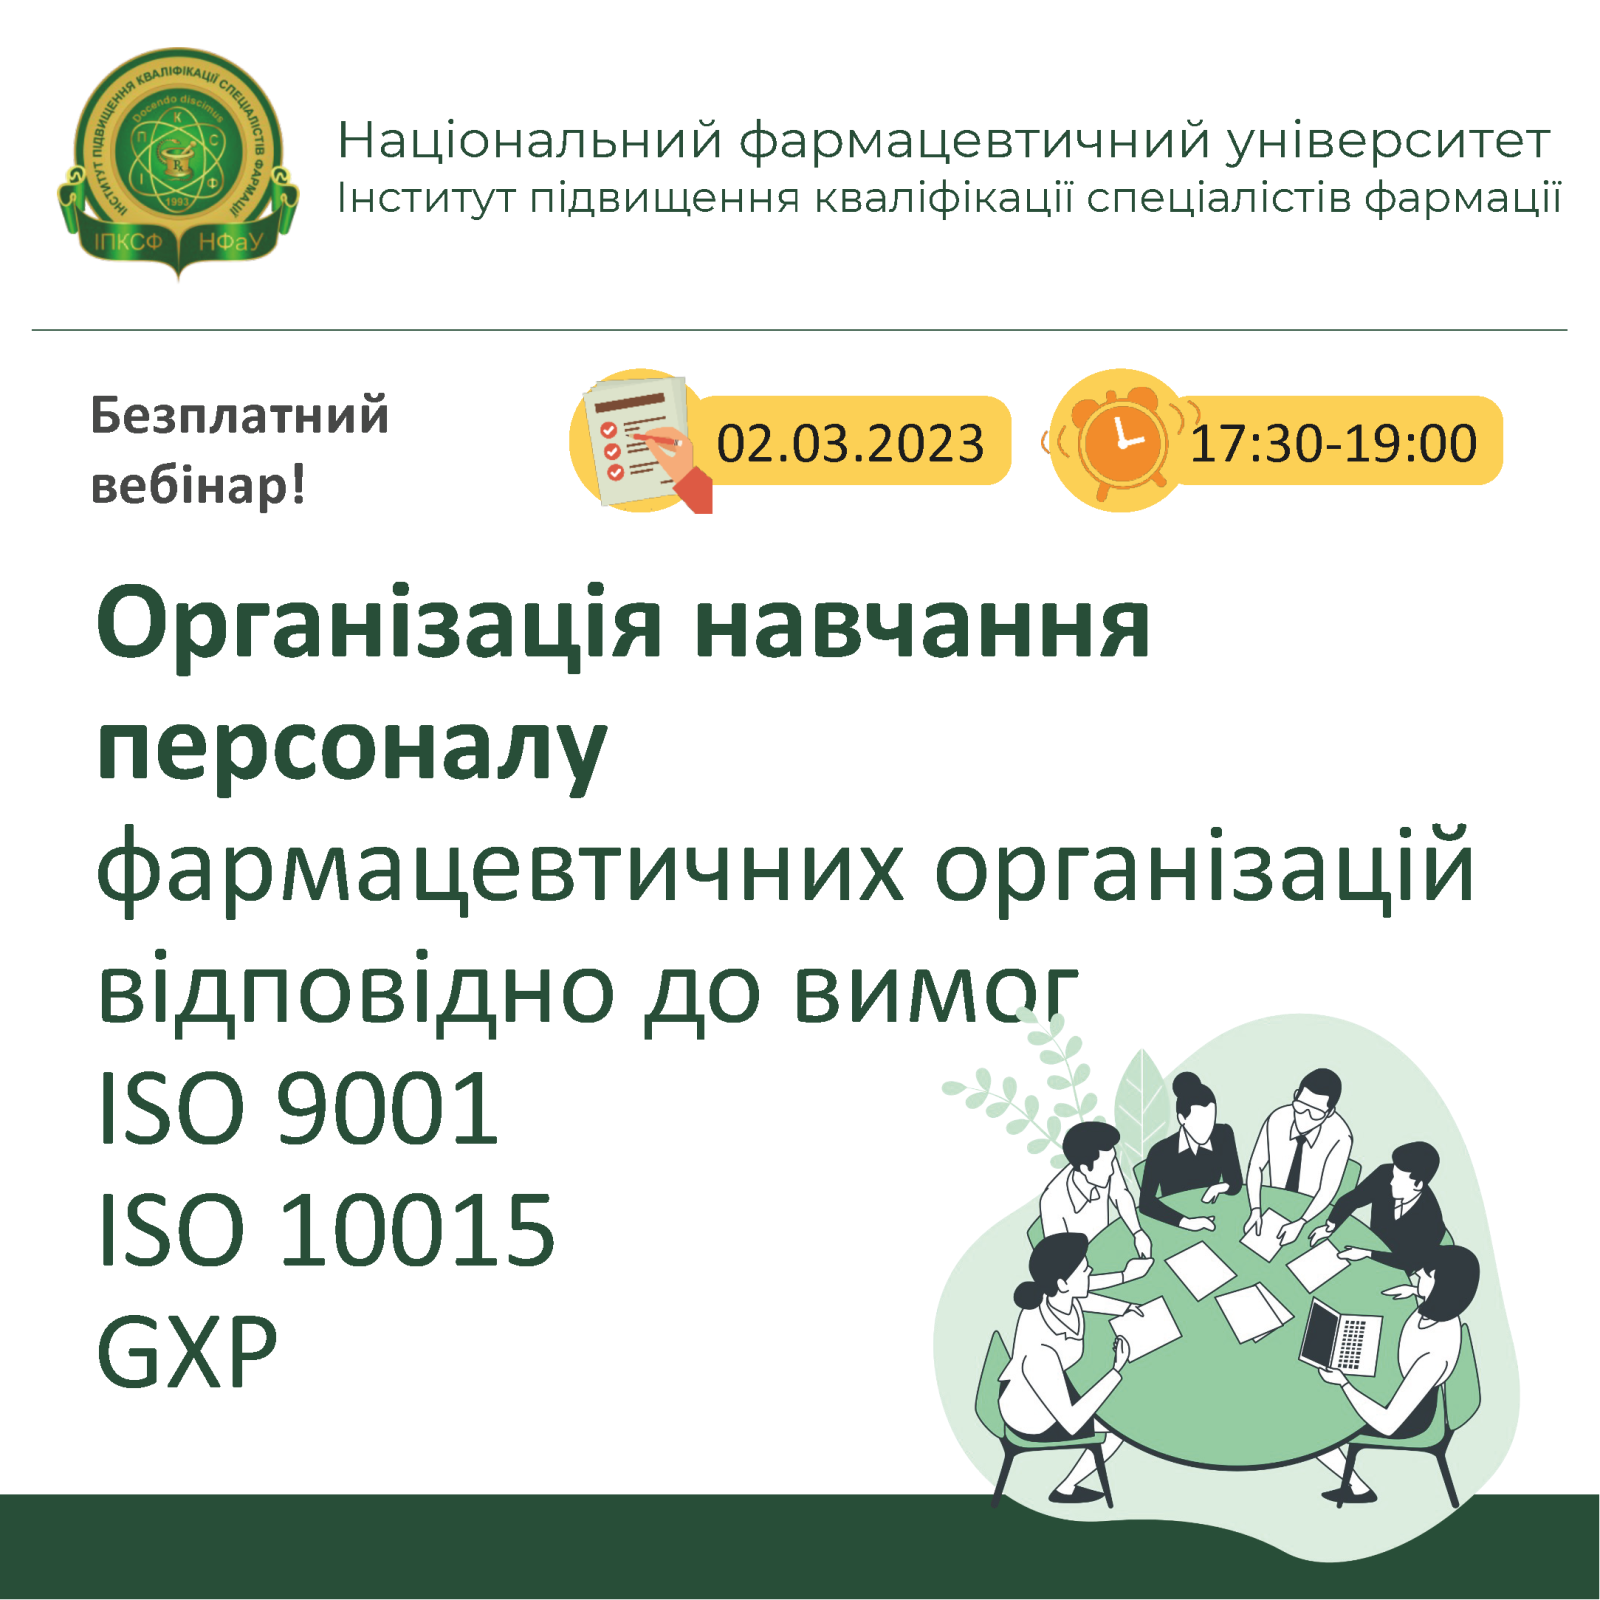 ПРАКТИЧНИЙ ОНЛАЙН-СЕМІНАР “ОРГАНІЗАЦІЯ НАВЧАННЯ ПЕРСОНАЛУ ФАРМАЦЕВТИЧНИХ ОРГАНІЗАЦІЙ ВІДПОВІДНО ДО ВИМОГ ISO 9001 ISO 10015” (02.03.2023)